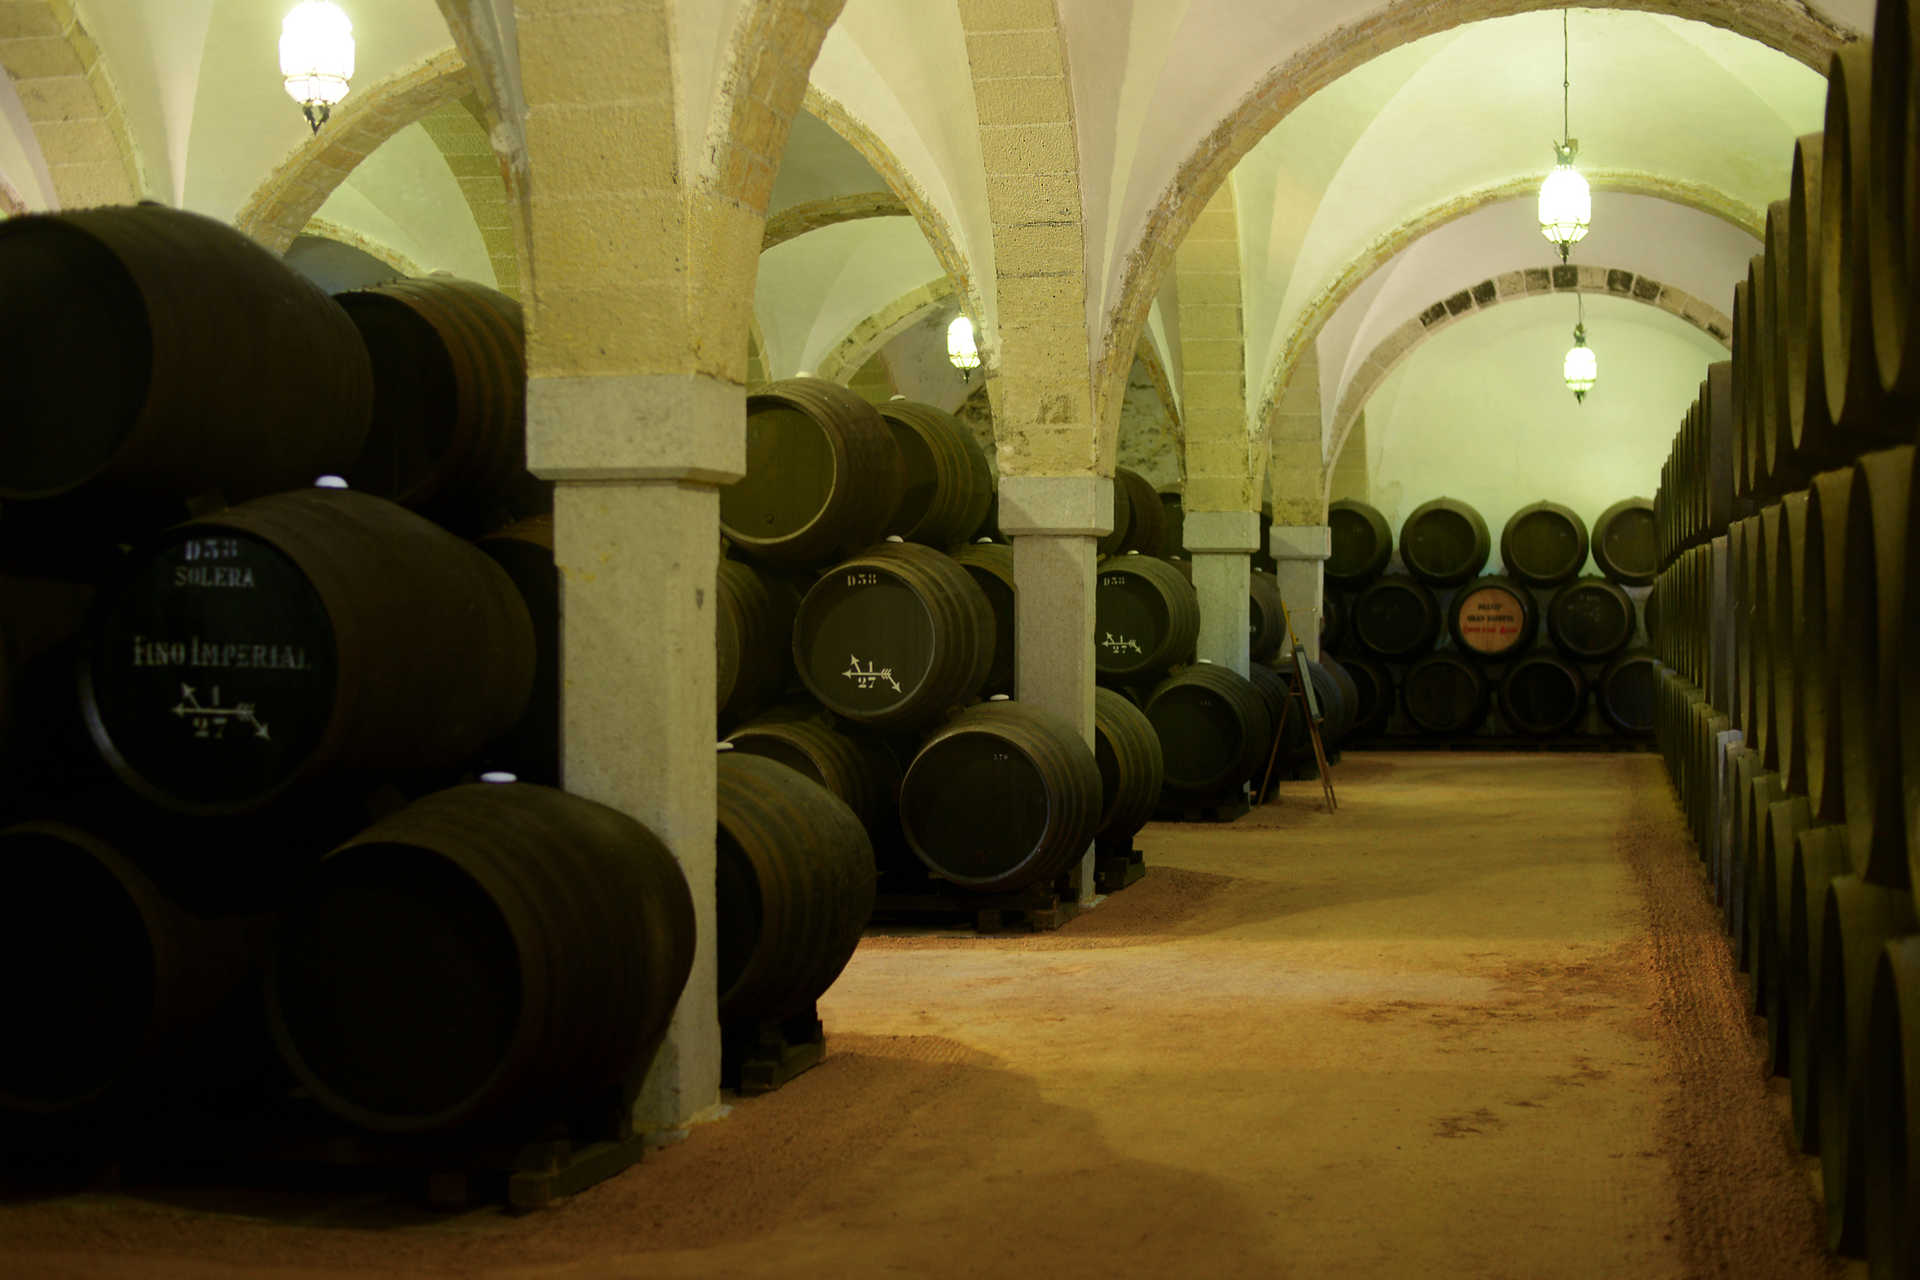 El vino de Jerez con su historia ycuriosidades siendo una experiencia irresistible (29).JPG